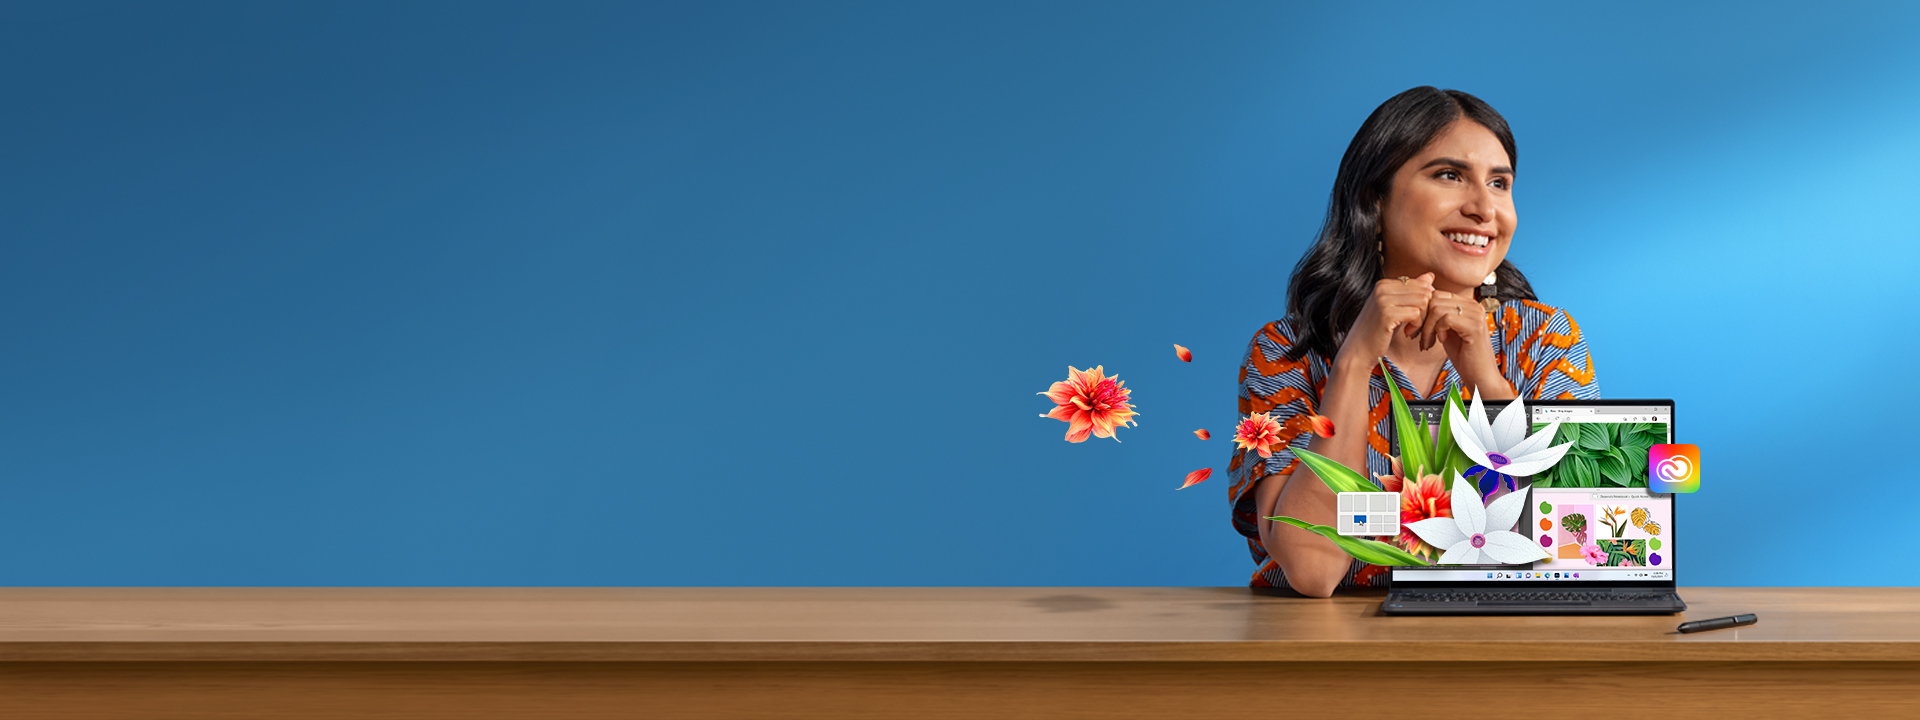 Eine Frau in einem gestreiften Kleid sitzt an einem Schreibtisch mit einem Laptop vor sich. Wie von Zauberhand erscheinen digitale Elemente wie Snap-Layouts und florale Photoshop-Kunstwerke auf dem Bildschirm.